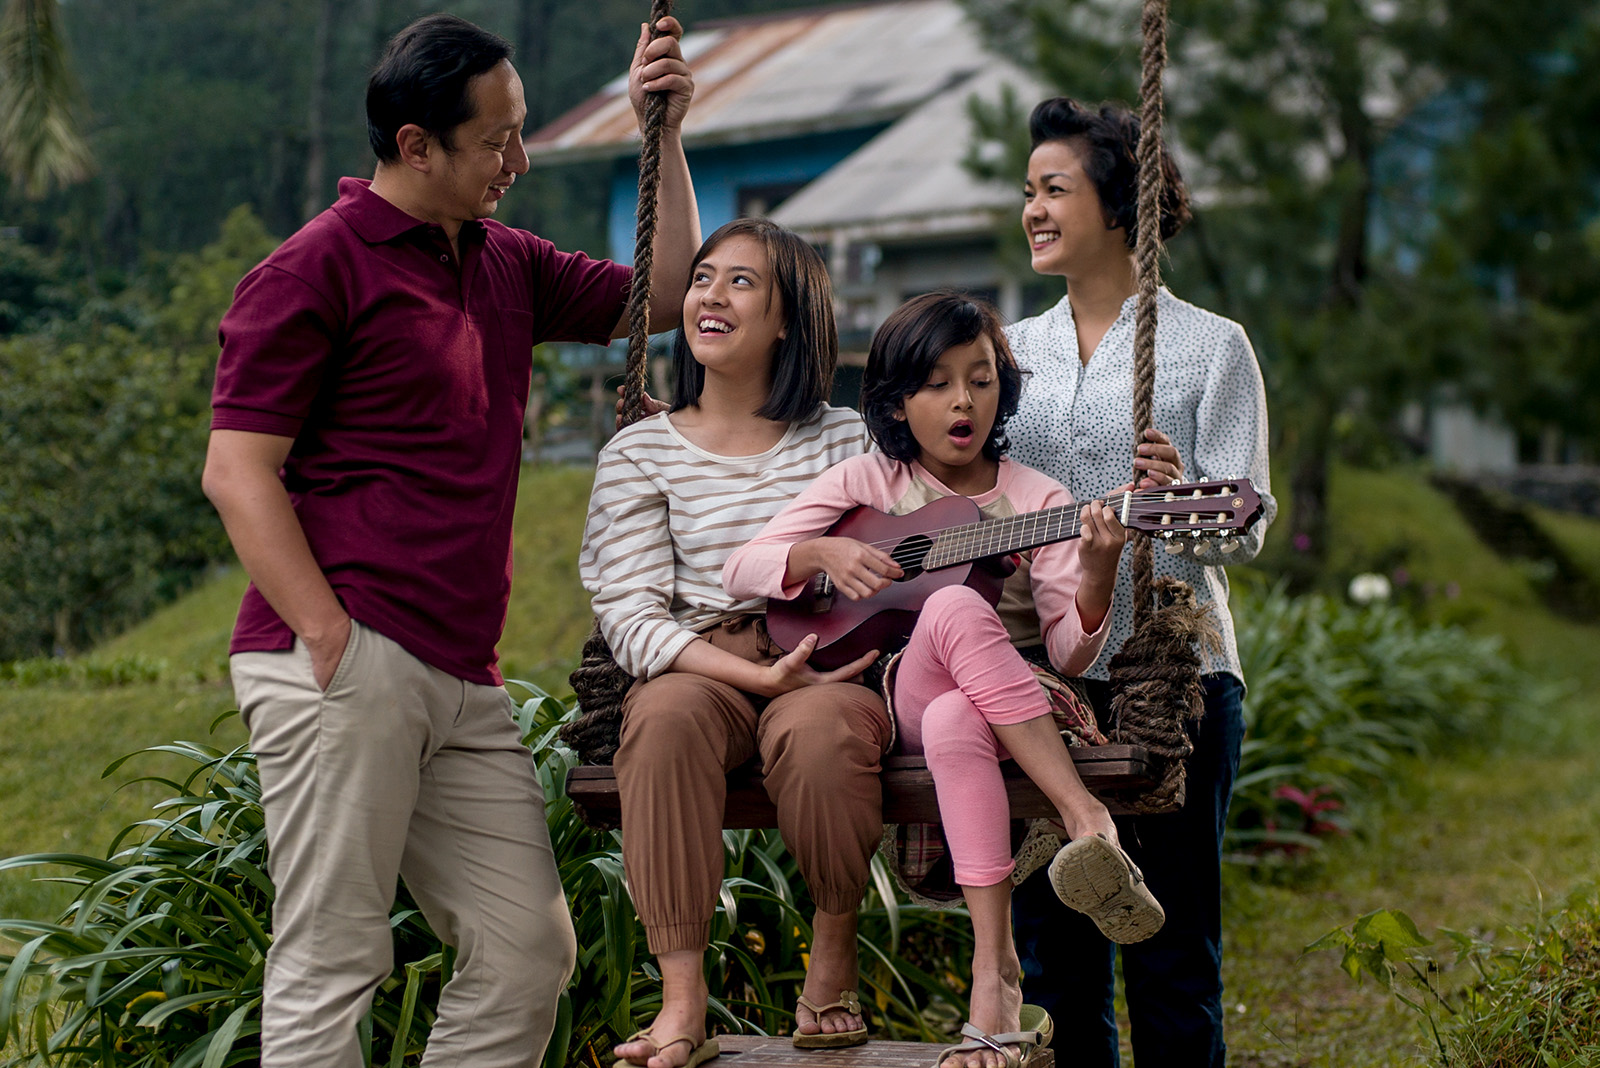 Festival Film Indonesia Los Angeles menghormati cerita yang beragam di negara ini